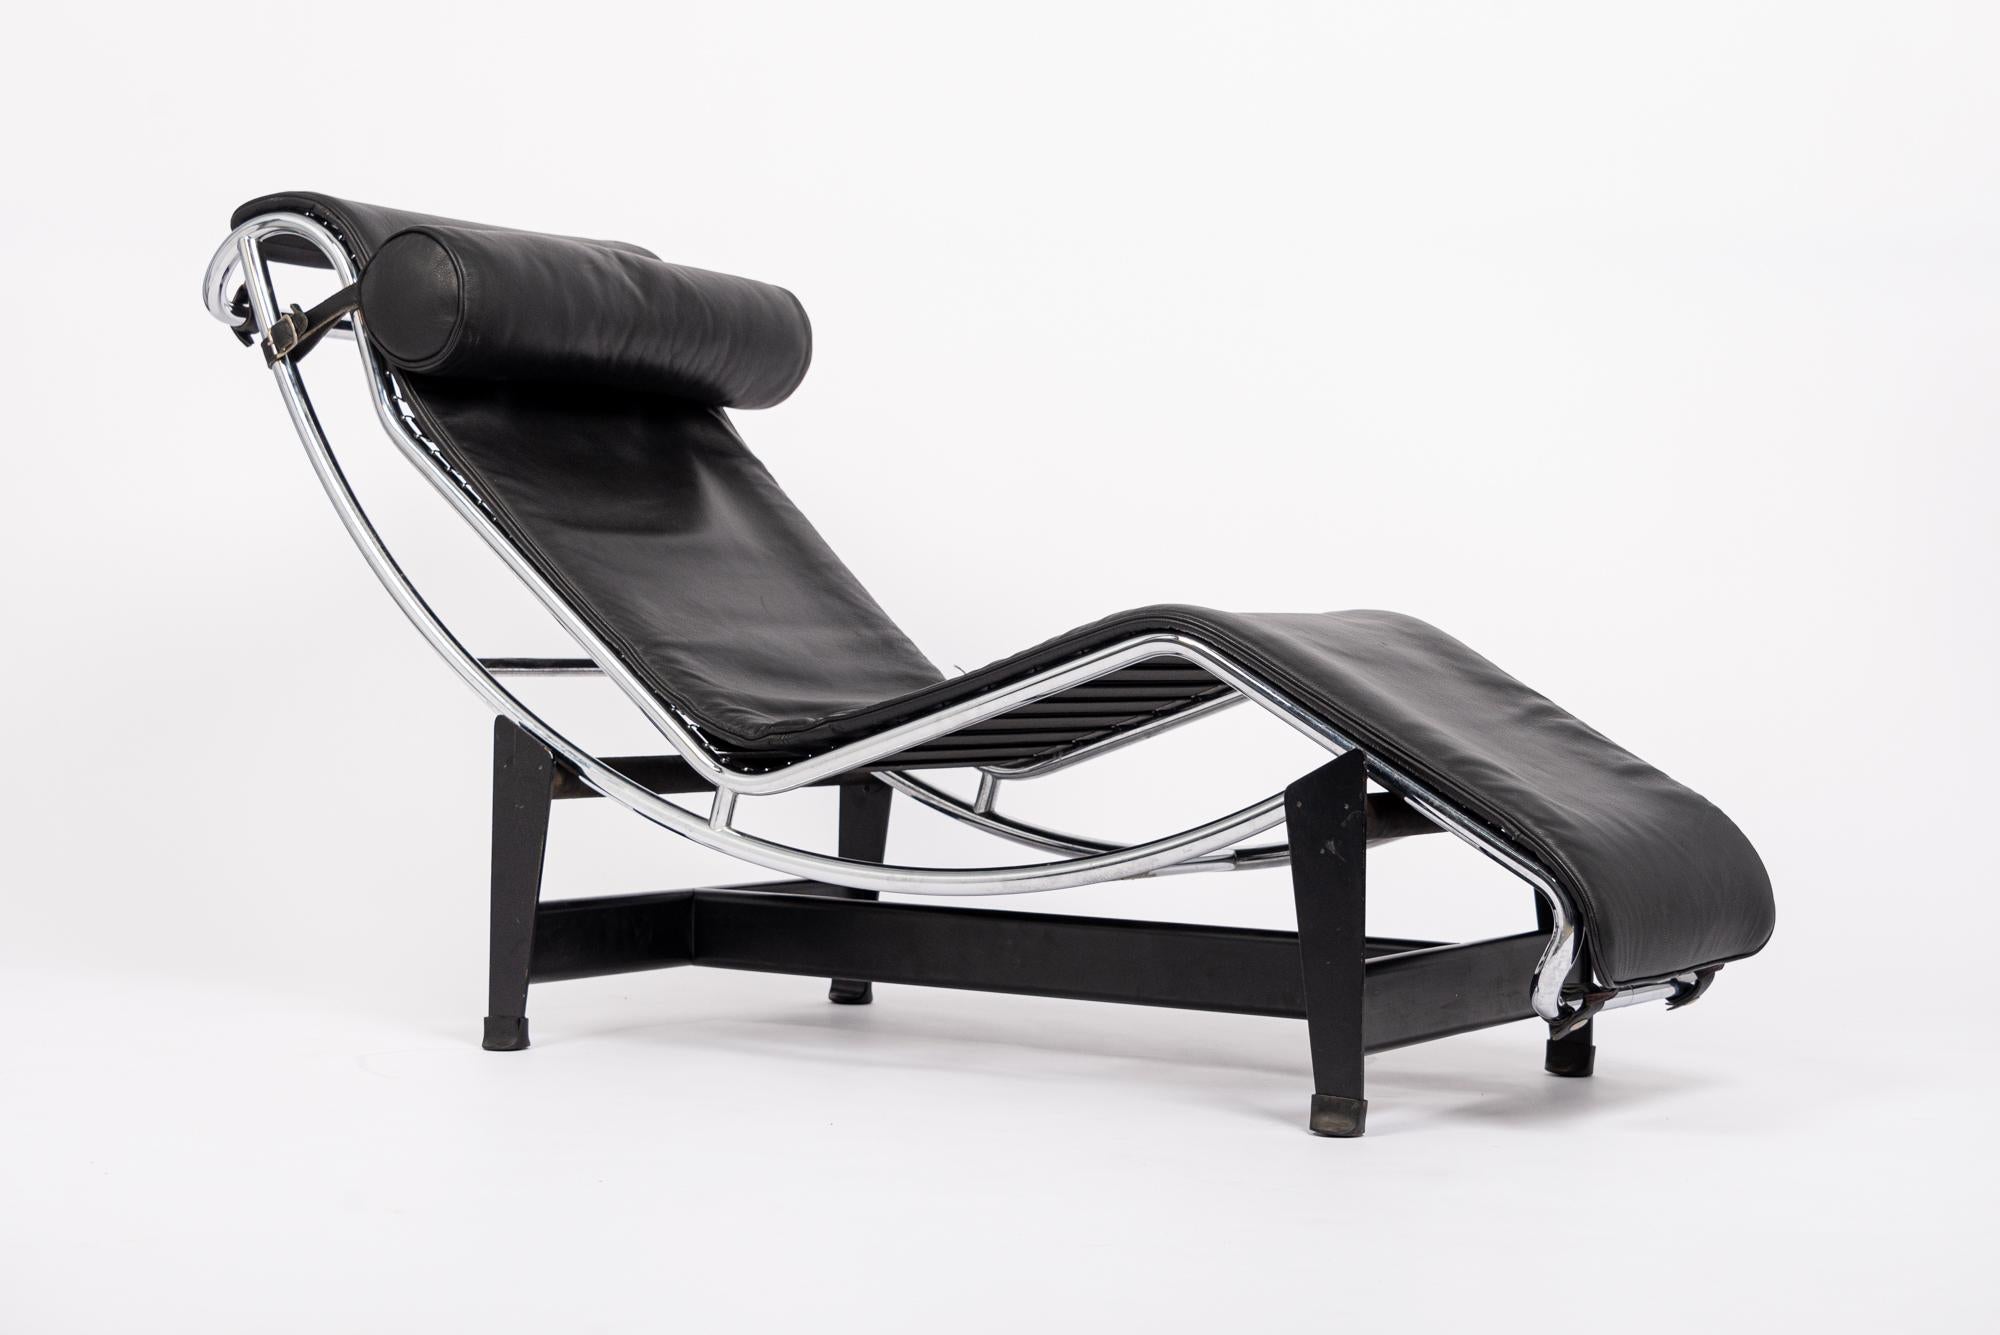 La chaise longue LC4 est un classique du Bauhaus et fait partie de la collection permanente du Museum of Modern Art de New York. Chaque pièce est signée, numérotée et fabriquée par Cassina sous licence mondiale exclusive de la Fondation Le